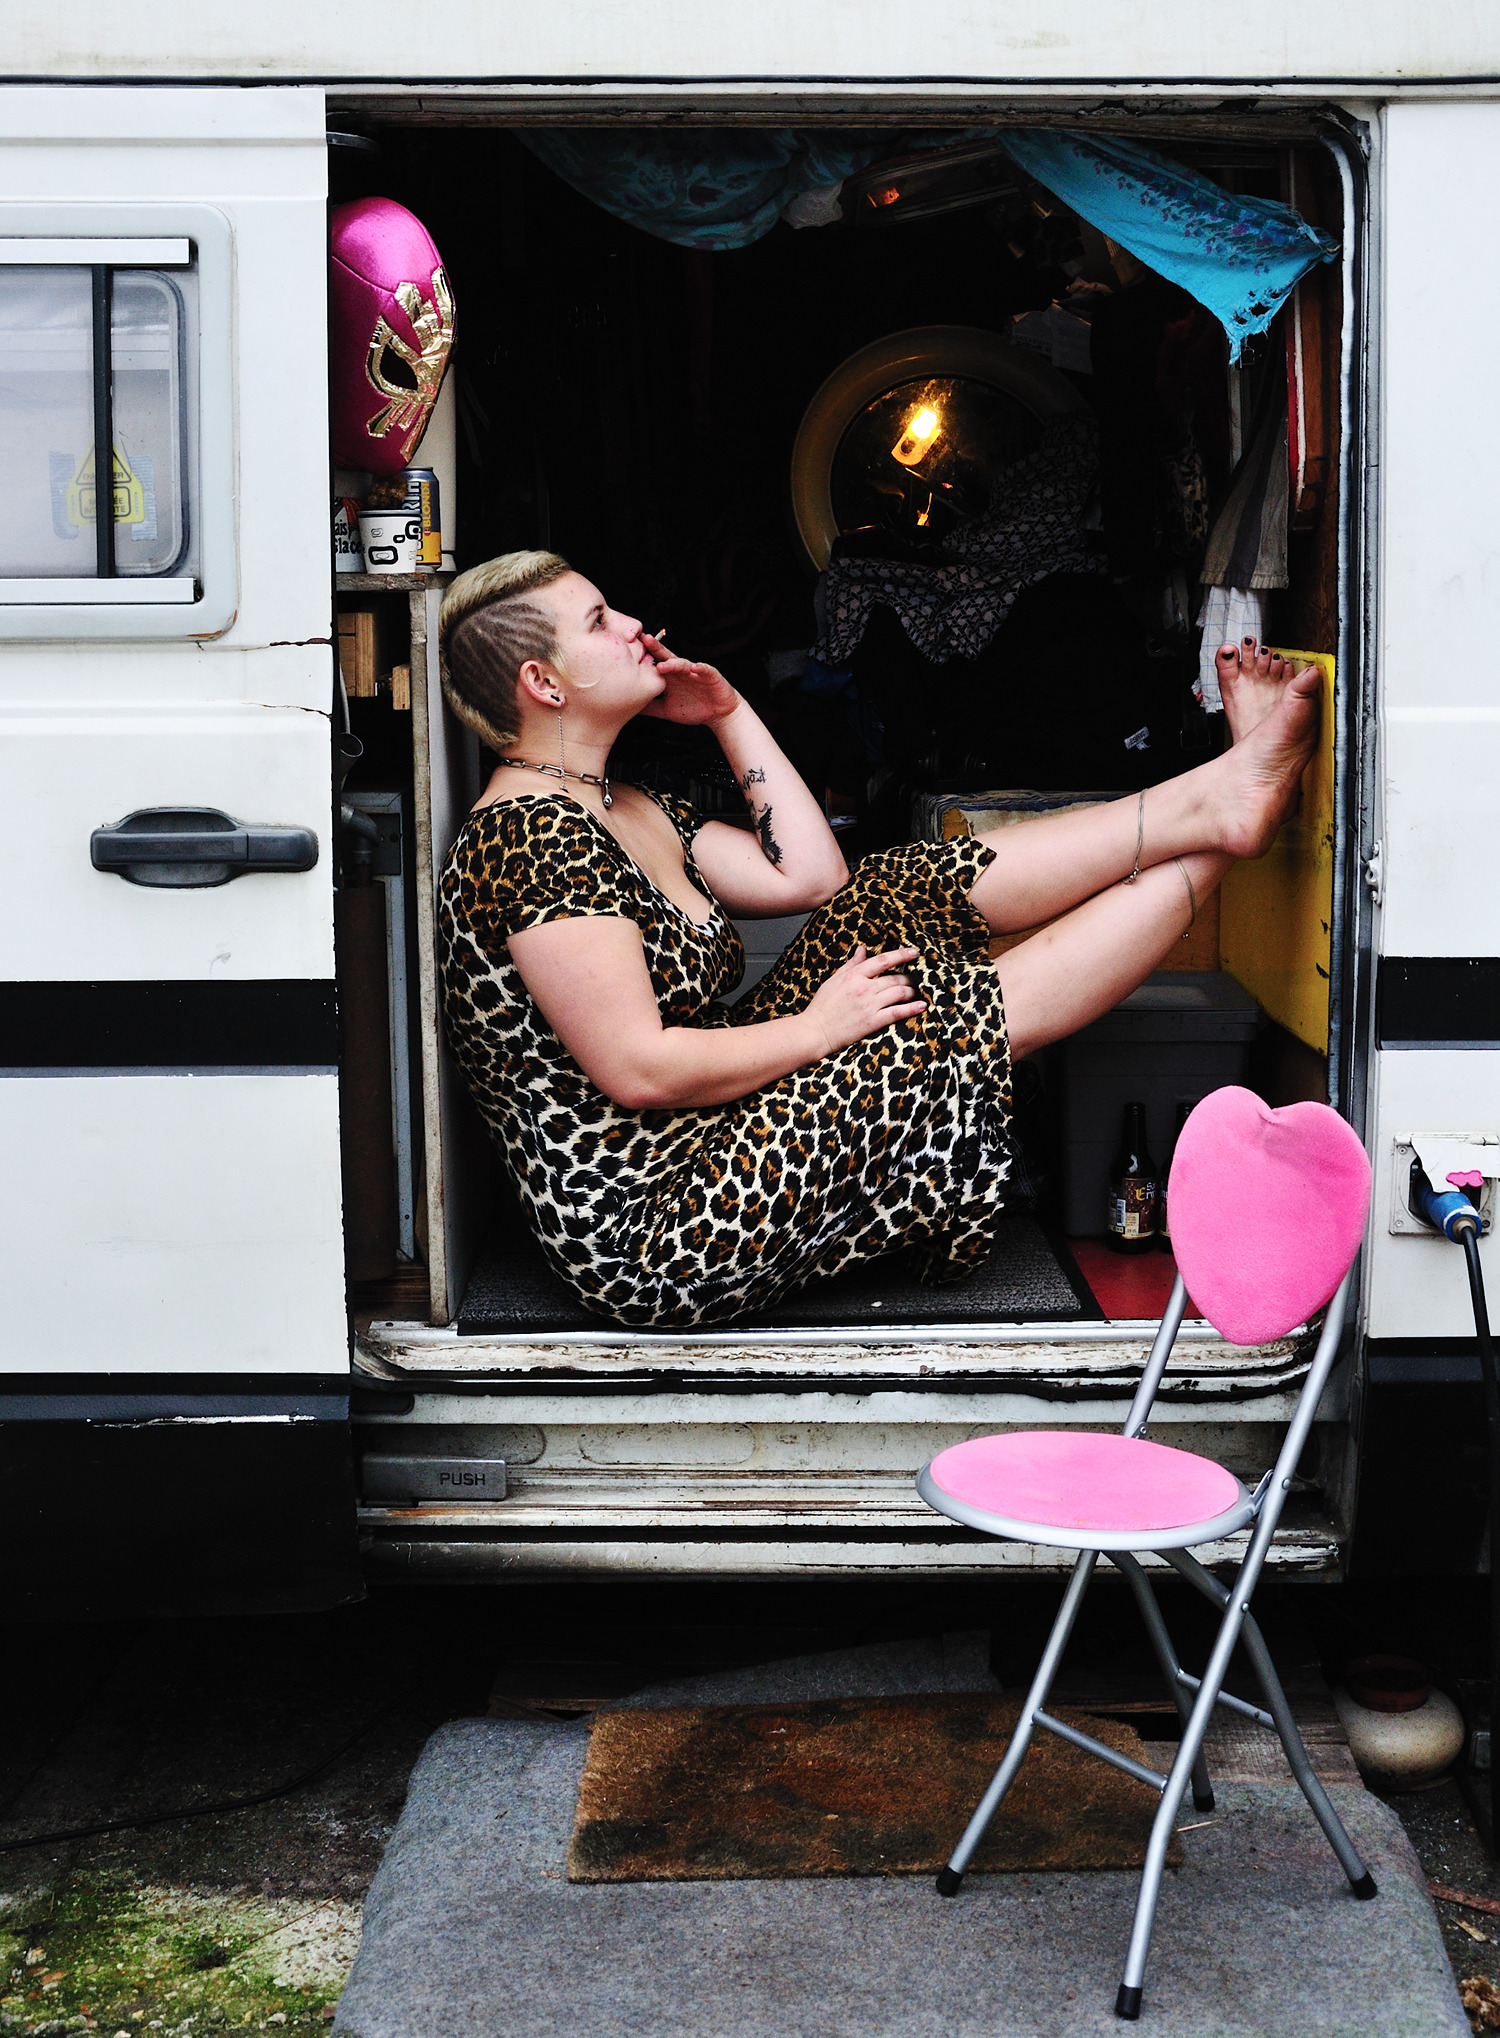 Mav chilling in her truck, Montreuil, France, 2014